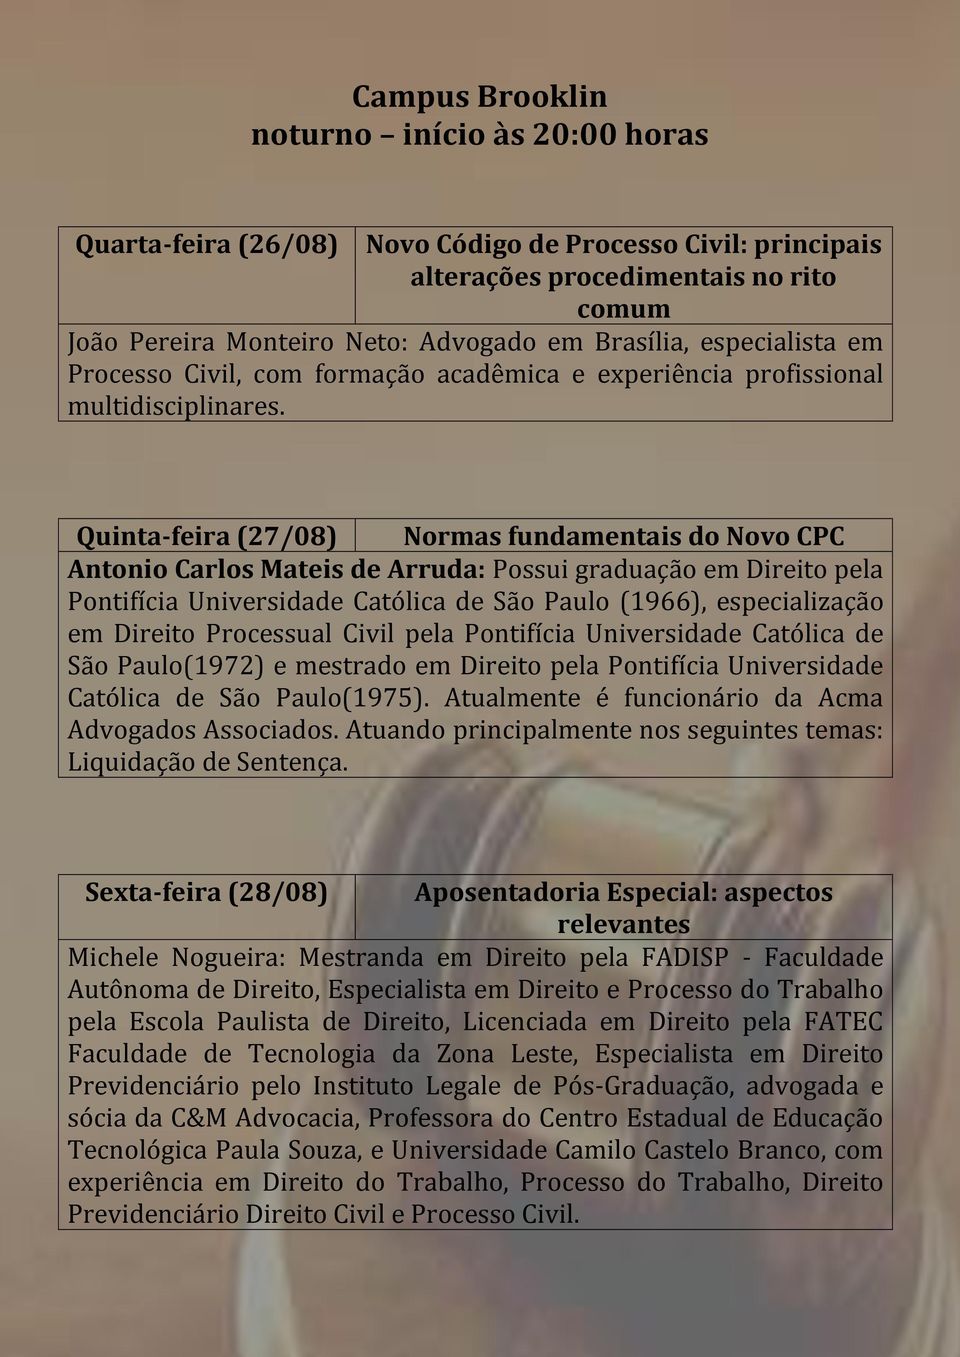 Quinta-feira (27/08) Normas fundamentais do Novo CPC Antonio Carlos Mateis de Arruda: Possui graduação em Direito pela Pontifícia Universidade Católica de São Paulo (1966), especialização em Direito